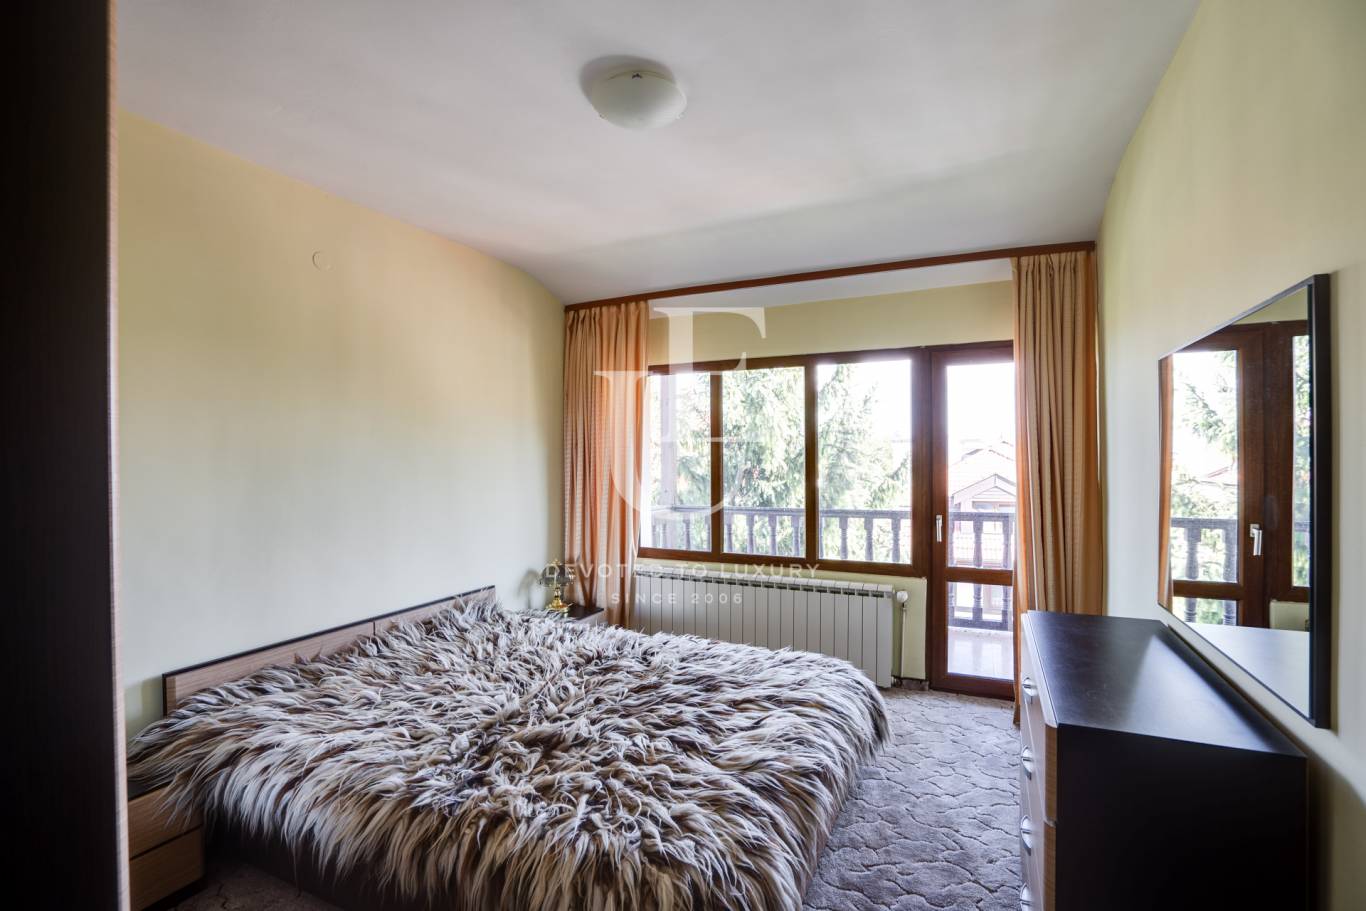 Хотел / Apartment house за продажба в Банско,  - код на имота: E18571 - image 19